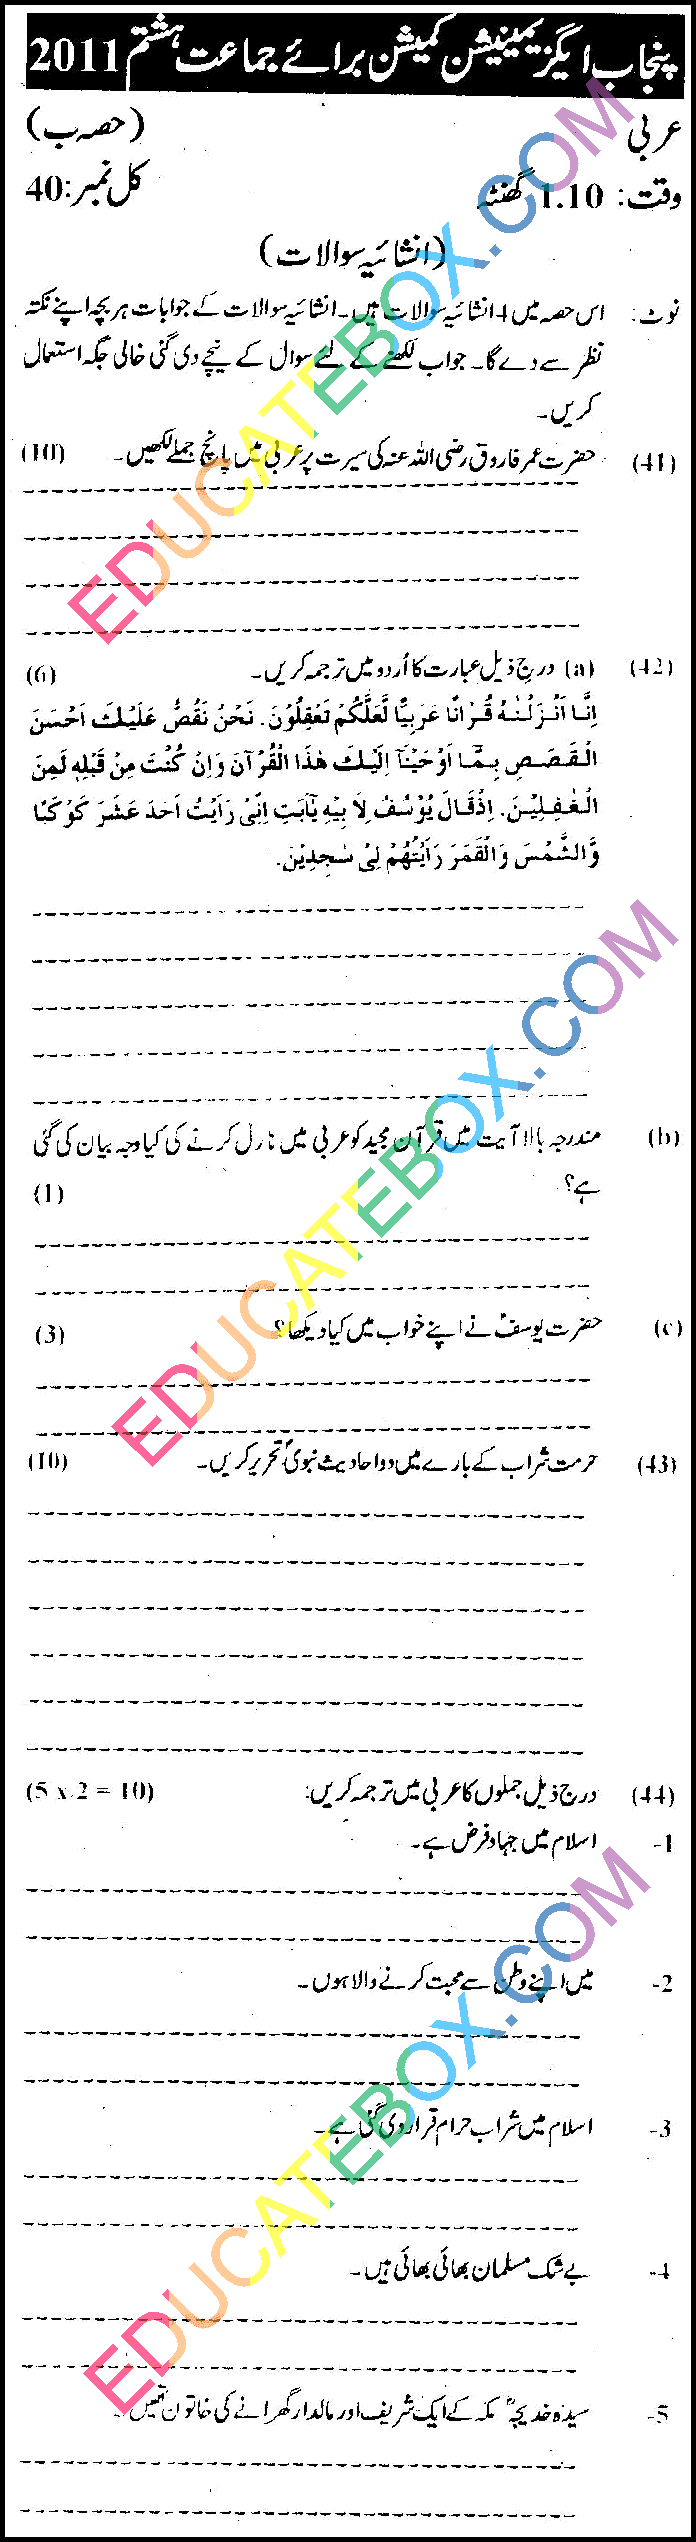 پیپر عربی برائے جماعت ہشتم (آٹھویں کلاس) 2011 پنجاب بورڈ انشائیہ طرز - Past Paper 8th Class Arabic Punjab Board (PEC) 2011 Page 4 Subjective Type